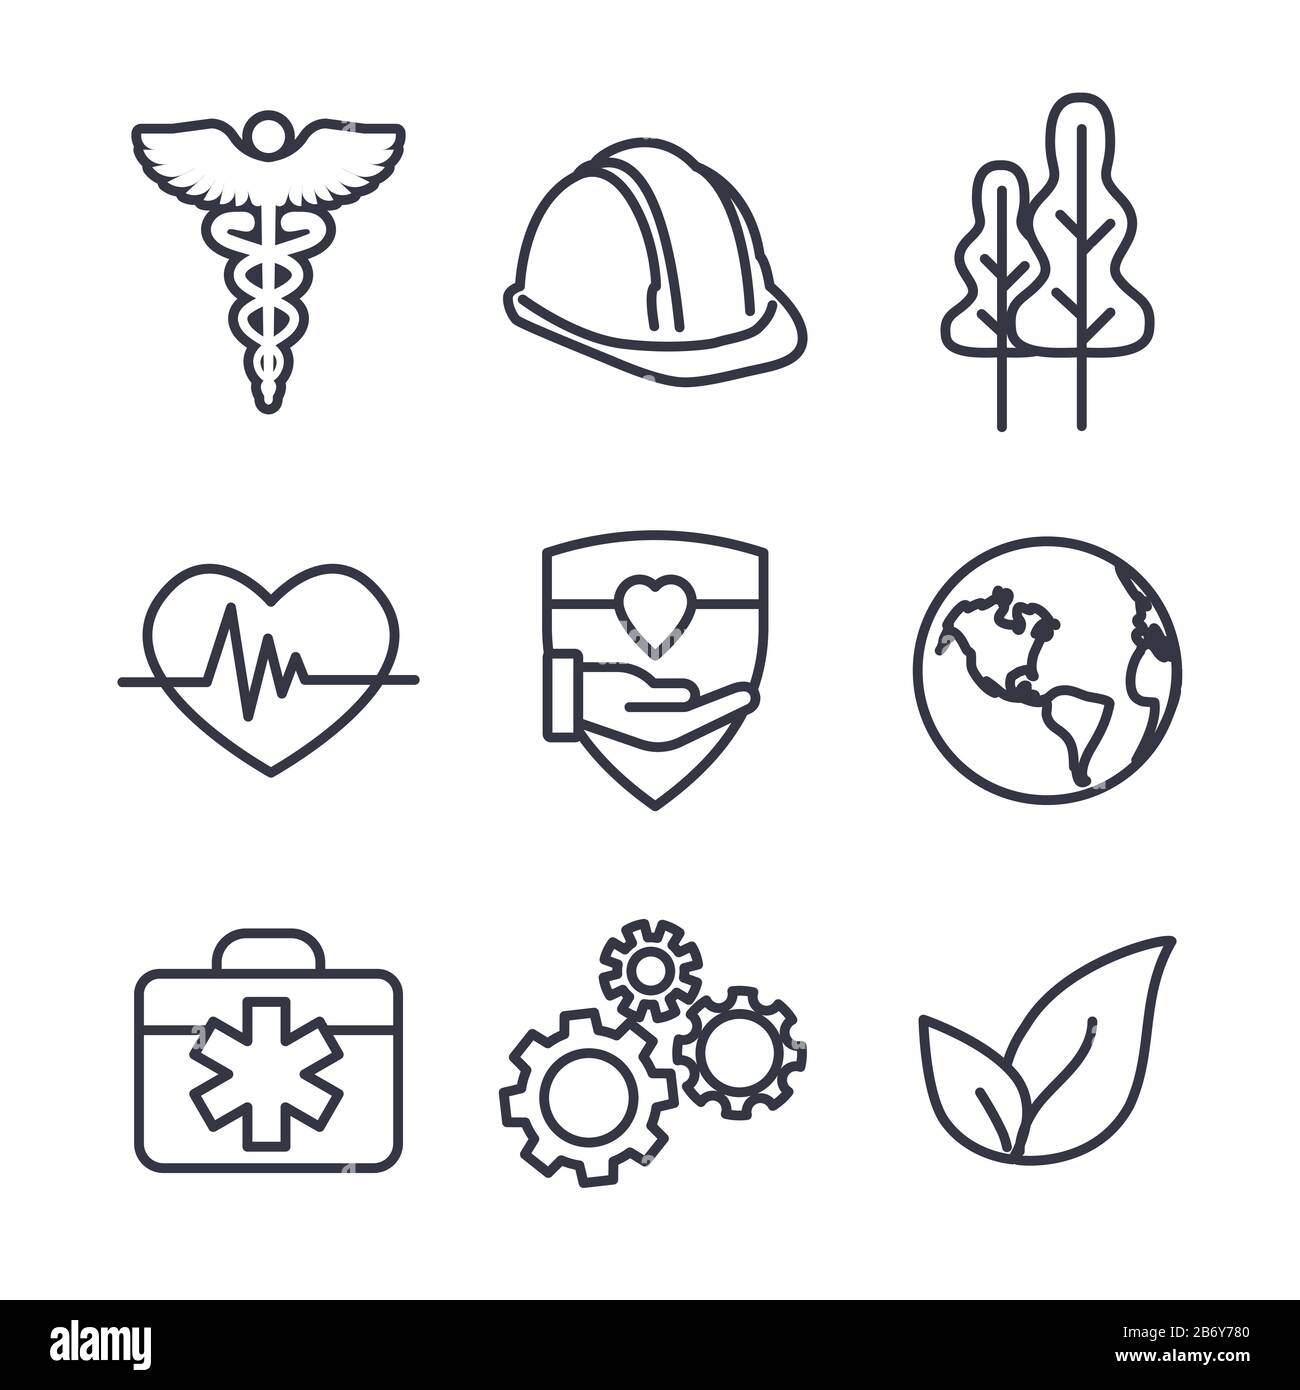 Health Safety & Environment (sicurezza e ambiente) Insieme Di Icone mediche, di sicurezza e di foglie Illustrazione Vettoriale